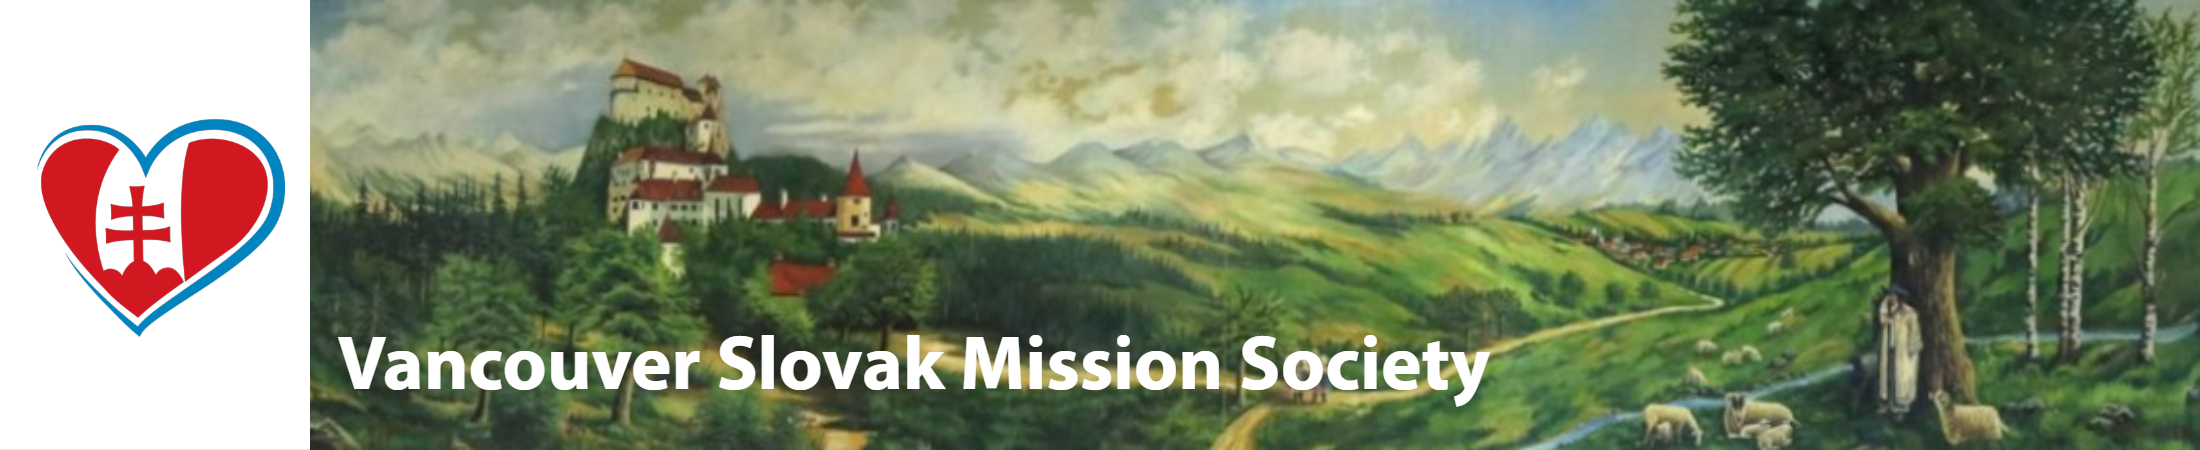 Vancouver Slovak Mission Society